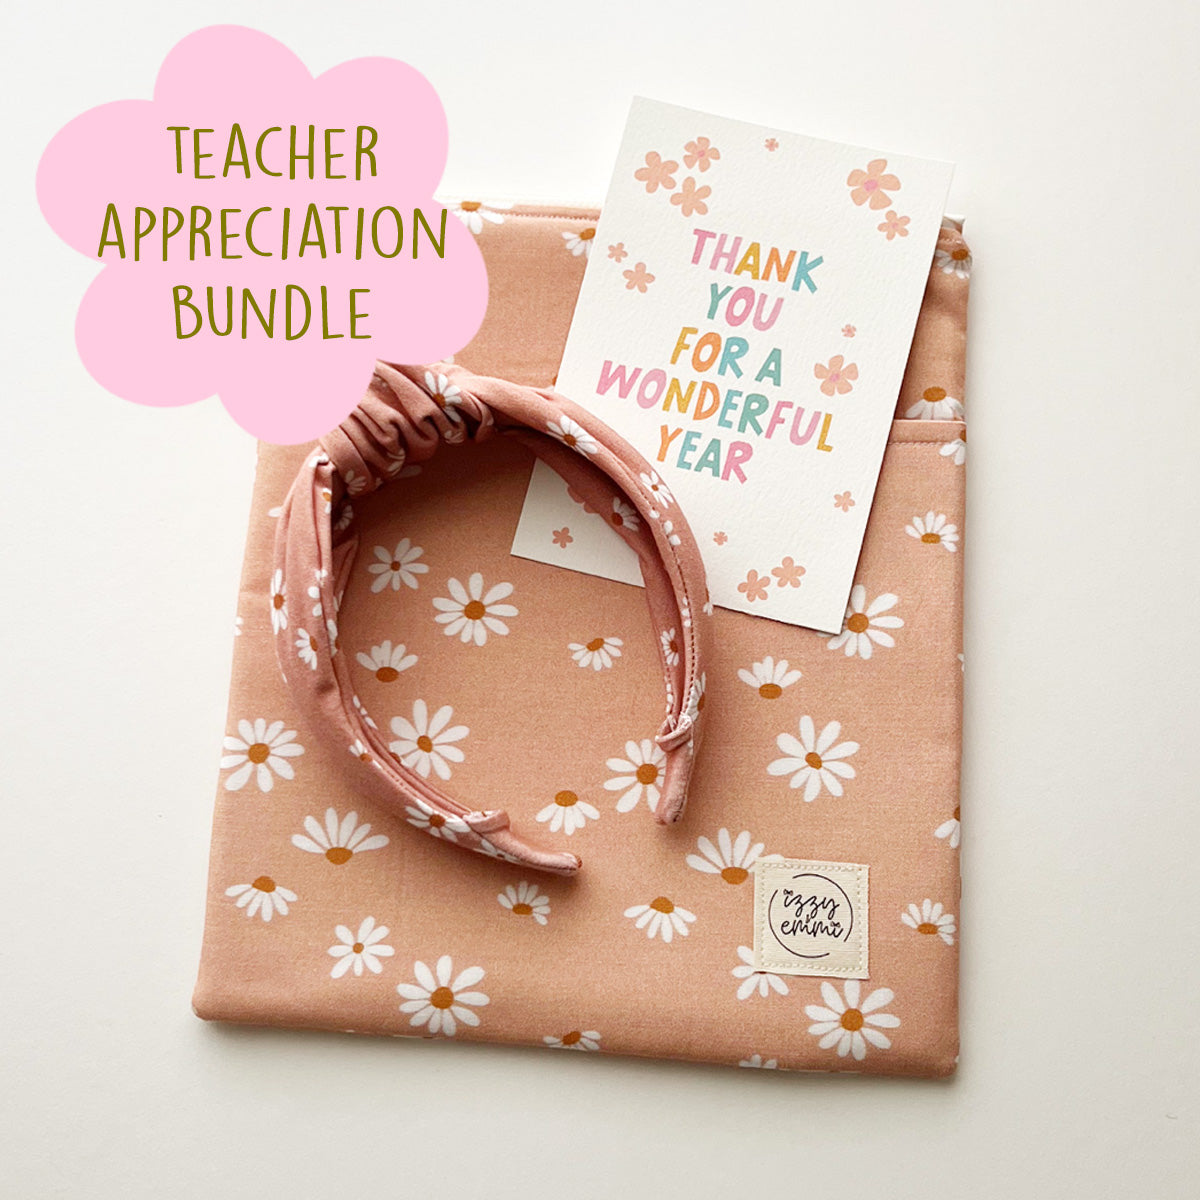 TEACHER APPRECIATION BUNDLE